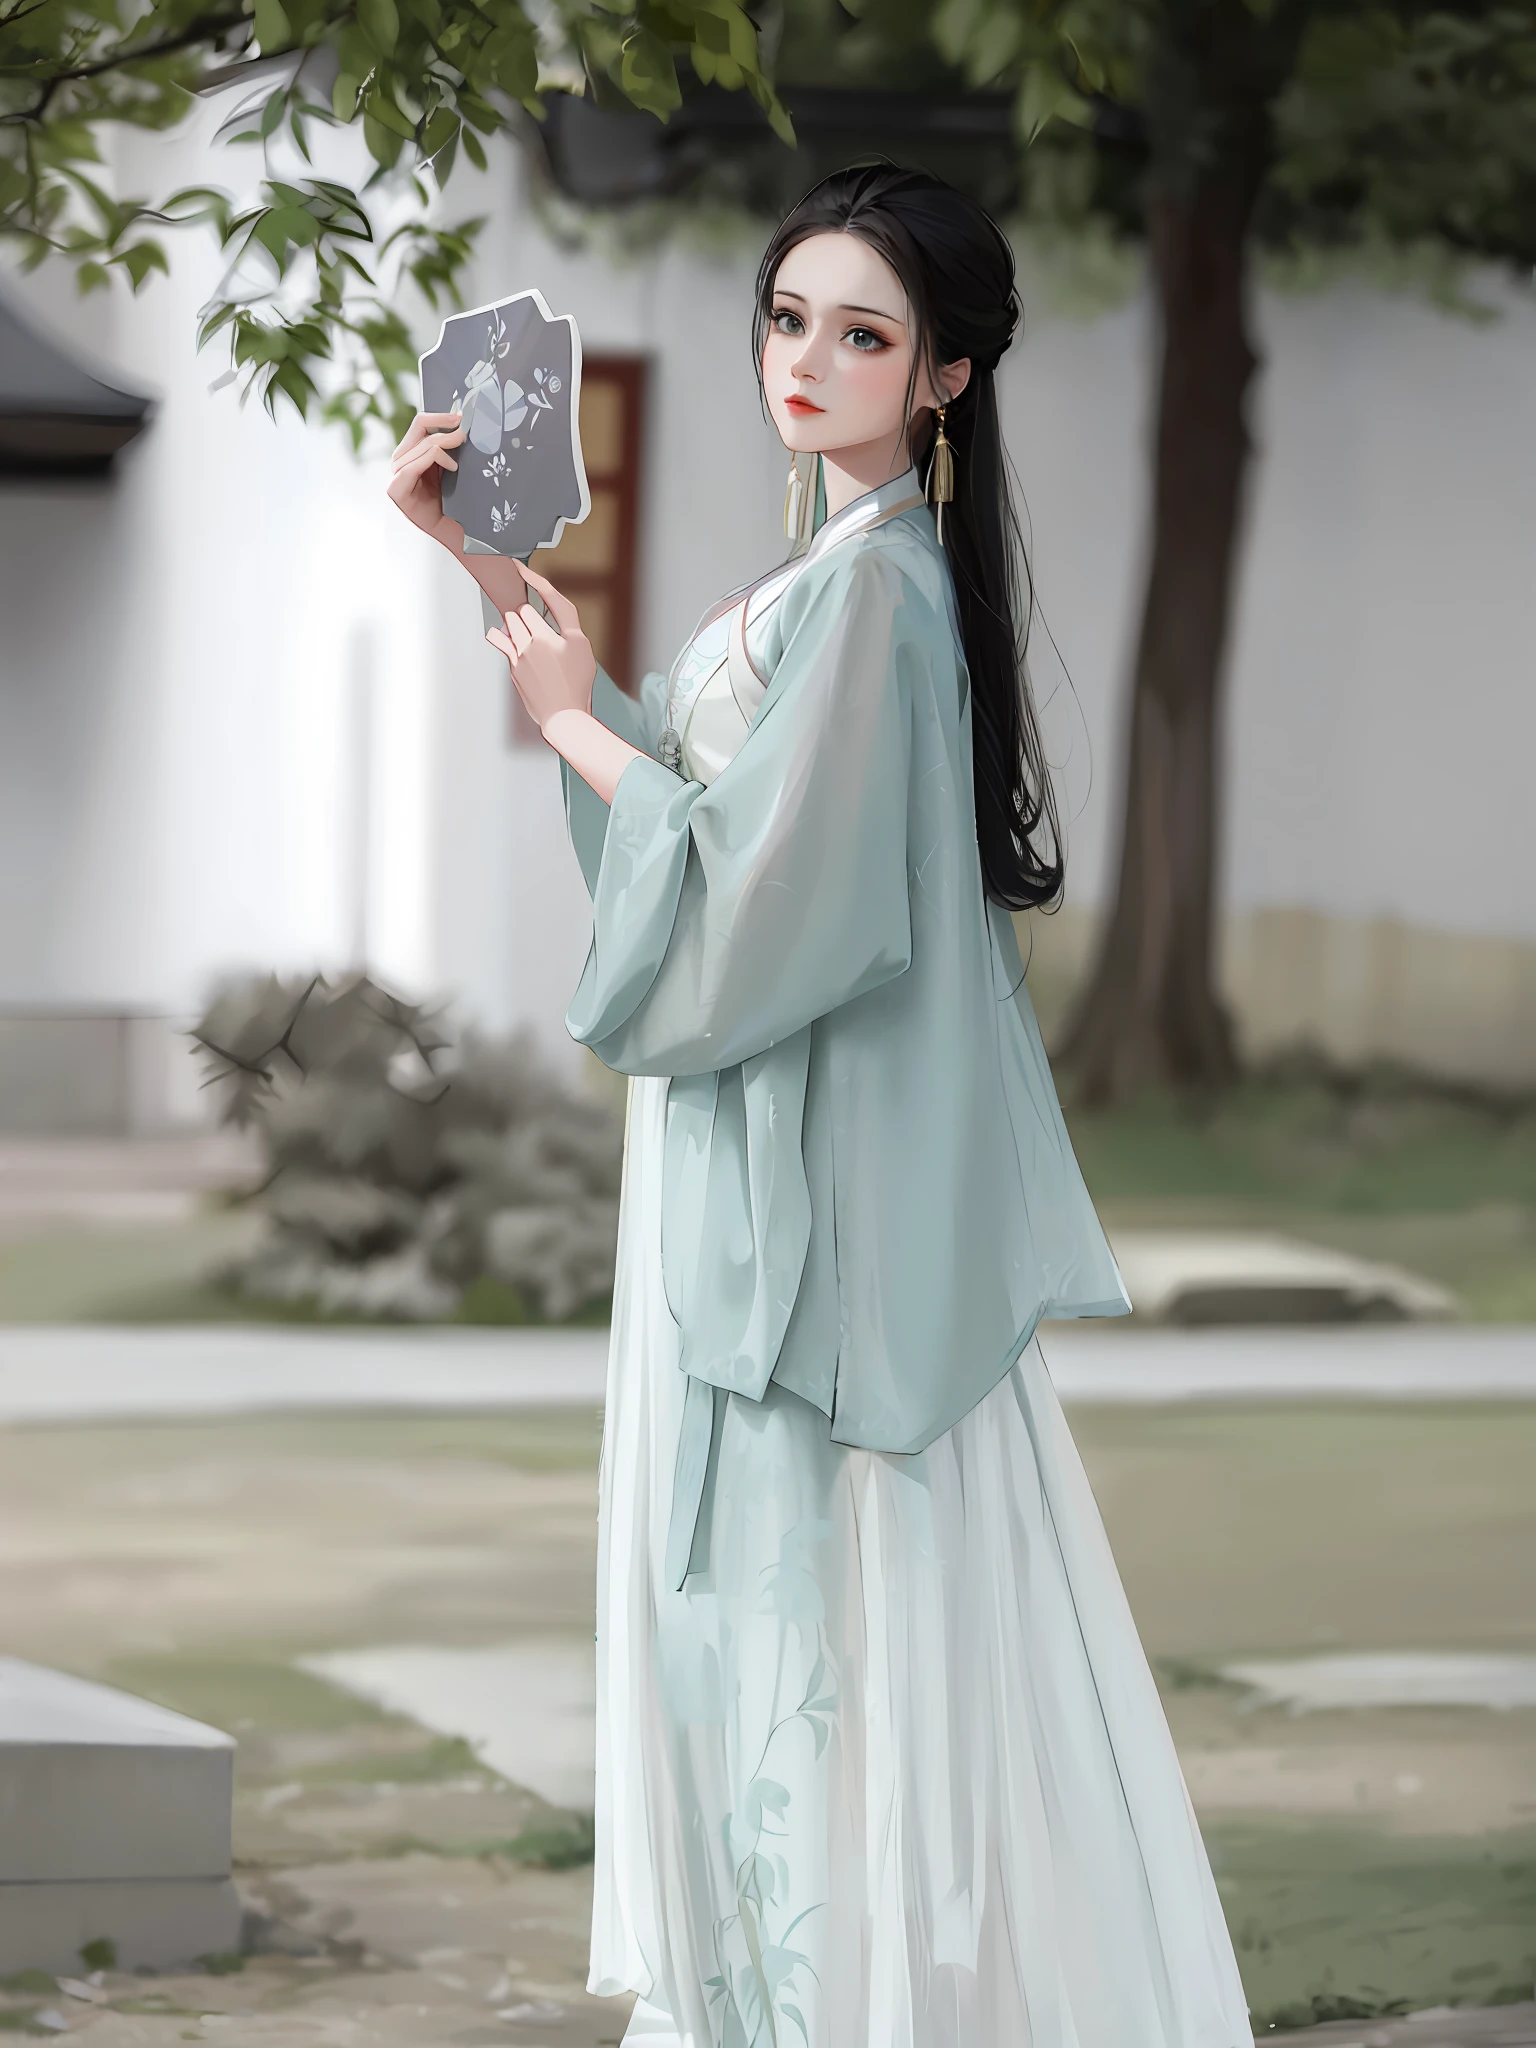 eine Frau in einem langen Kleid, die einen Spiegel in der Hand hält, hanfu, weißer Hanfu, mit antiker chinesischer Kleidung, das Tragen antiker chinesischer Kleidung, traditionelle chinesische Kleidung, Palast ， Ein Mädchen in Hanfu, Stil von Guohua, chinesischer Stil, Chinesisches Kostüm, meer - grüne und weiße Kleidung, Trägt einen luxuriösen Seidenmantel, Sha Xi, chinesisches kleid